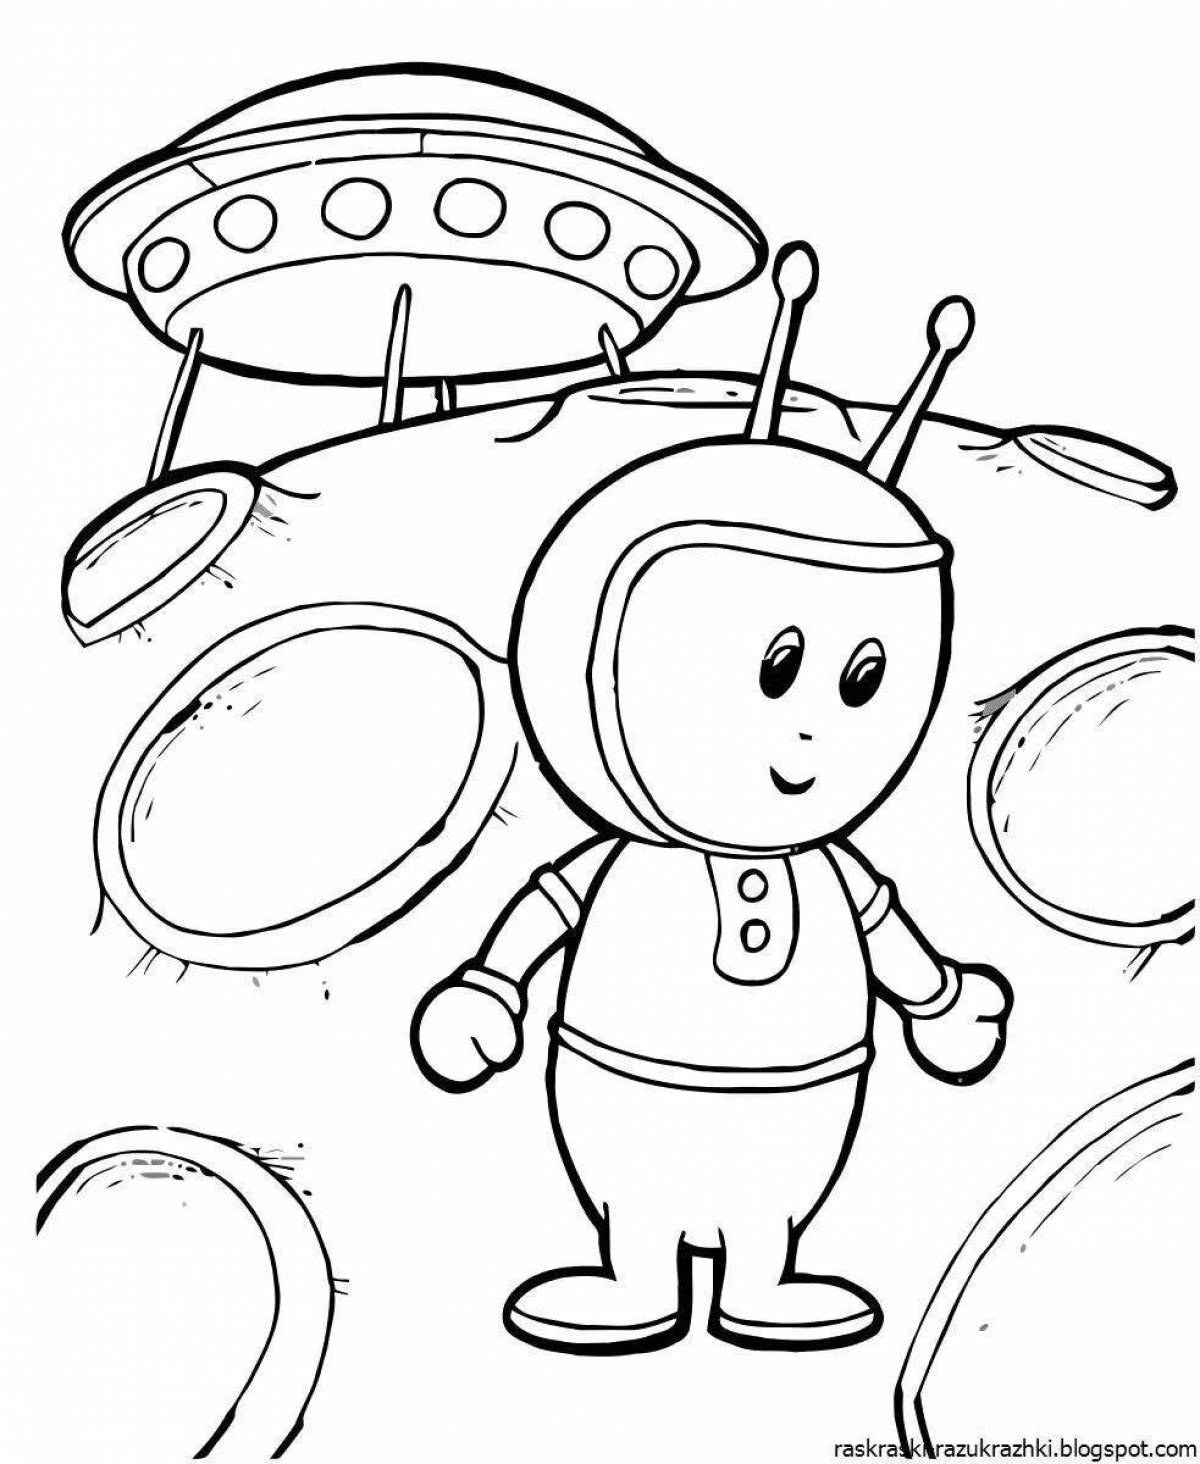 Раскраска космос 3 4 года. Раскраска. В космосе. Раскраски на тему космос. Космонавтика раскраски для детей. Космос раскраска для детей.